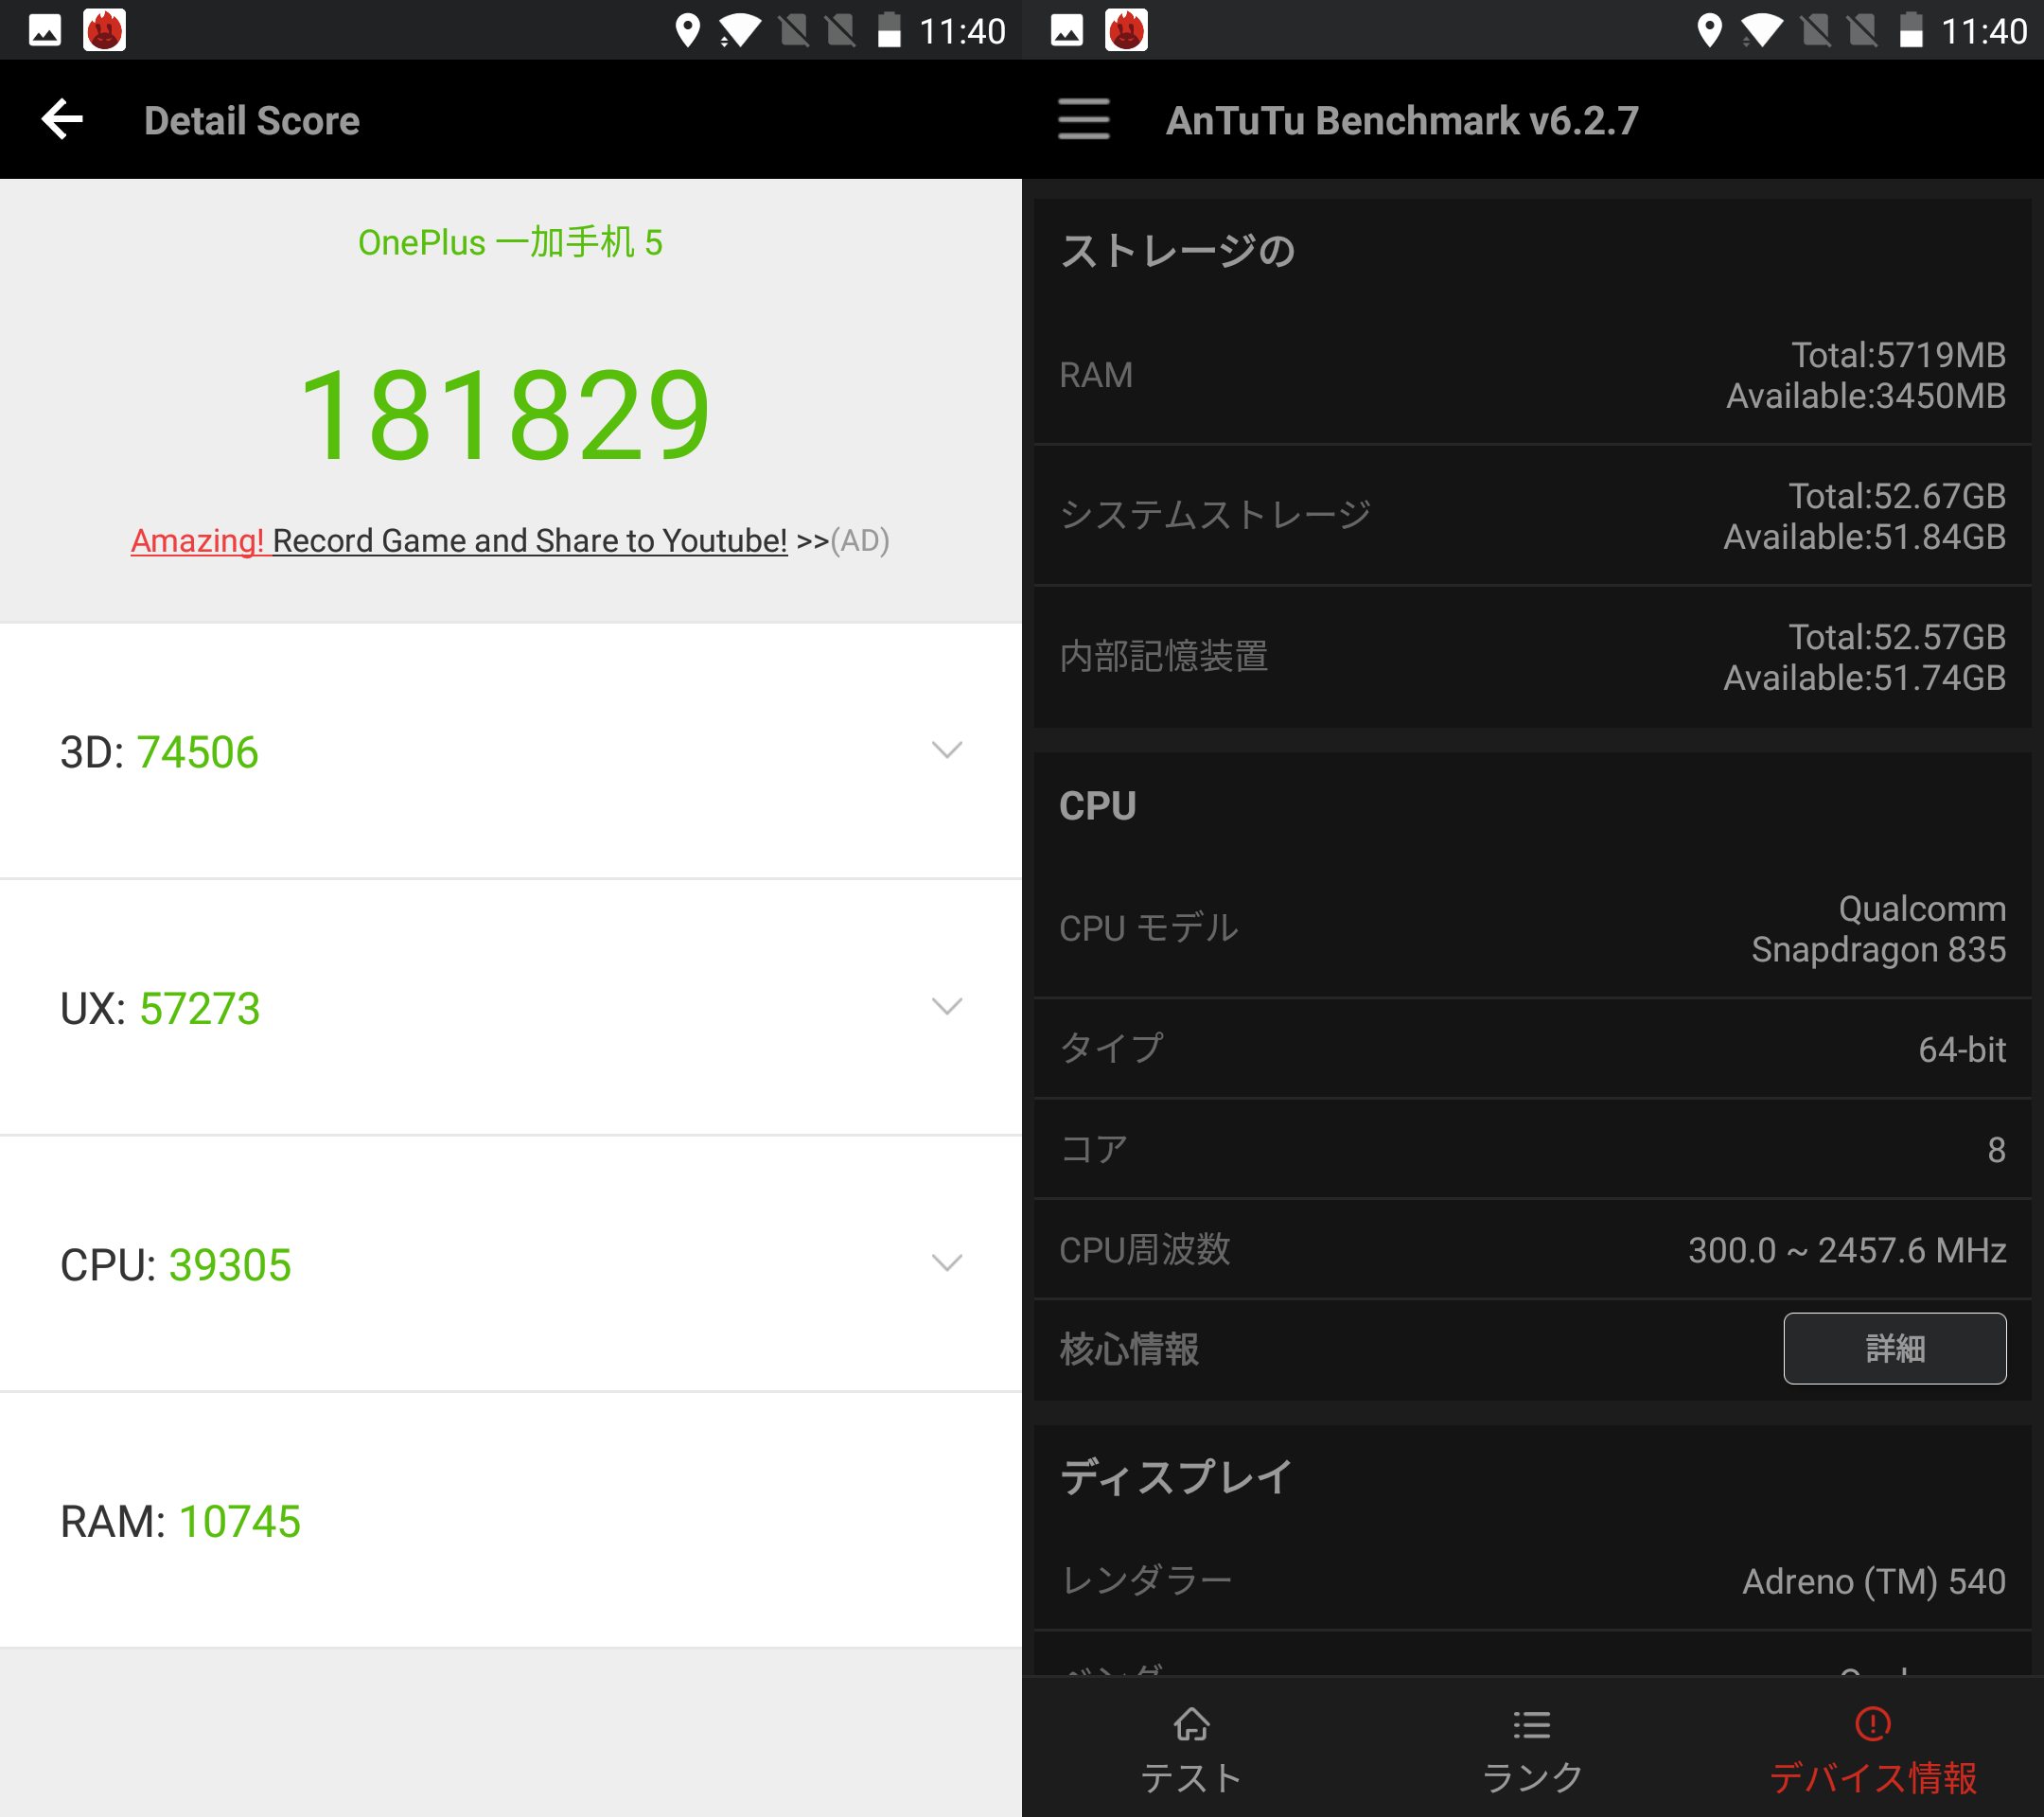 OnePlus 5（Android 7.1.1）実機AnTuTuベンチマークスコアは総合が181829点、3D性能が74506点。